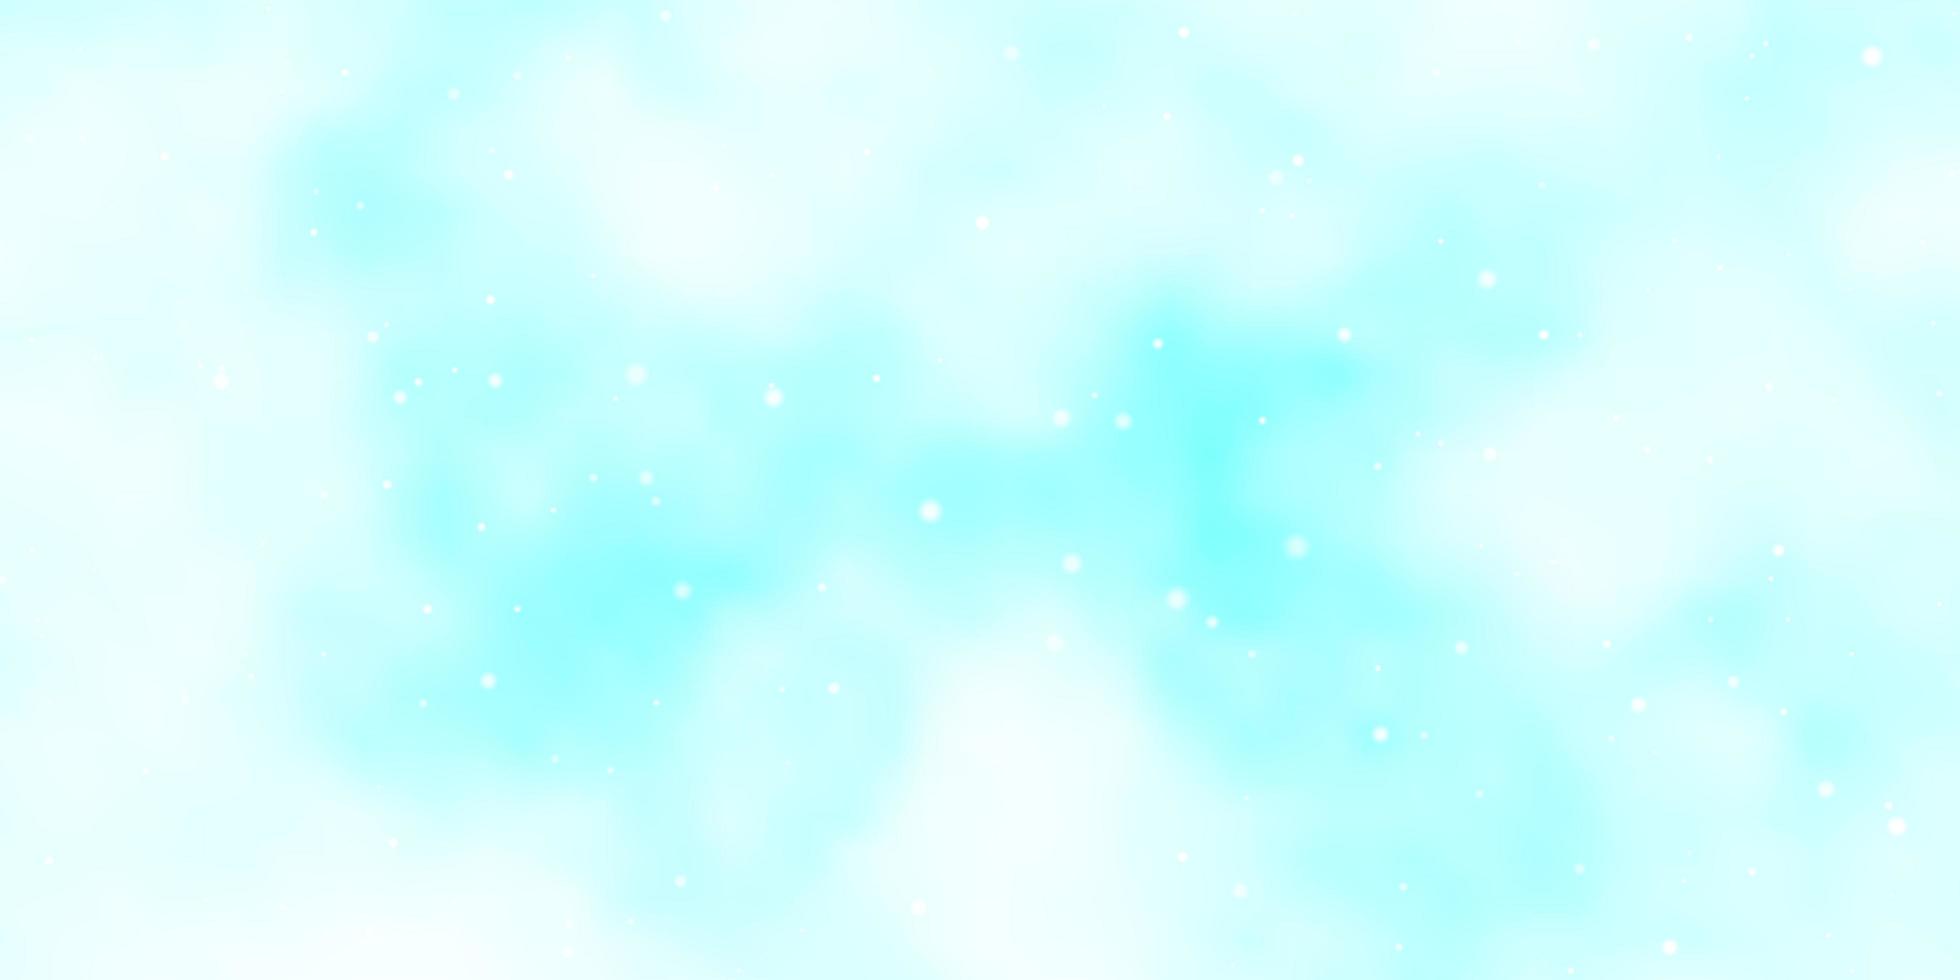 patrón de vector azul claro con estrellas abstractas.